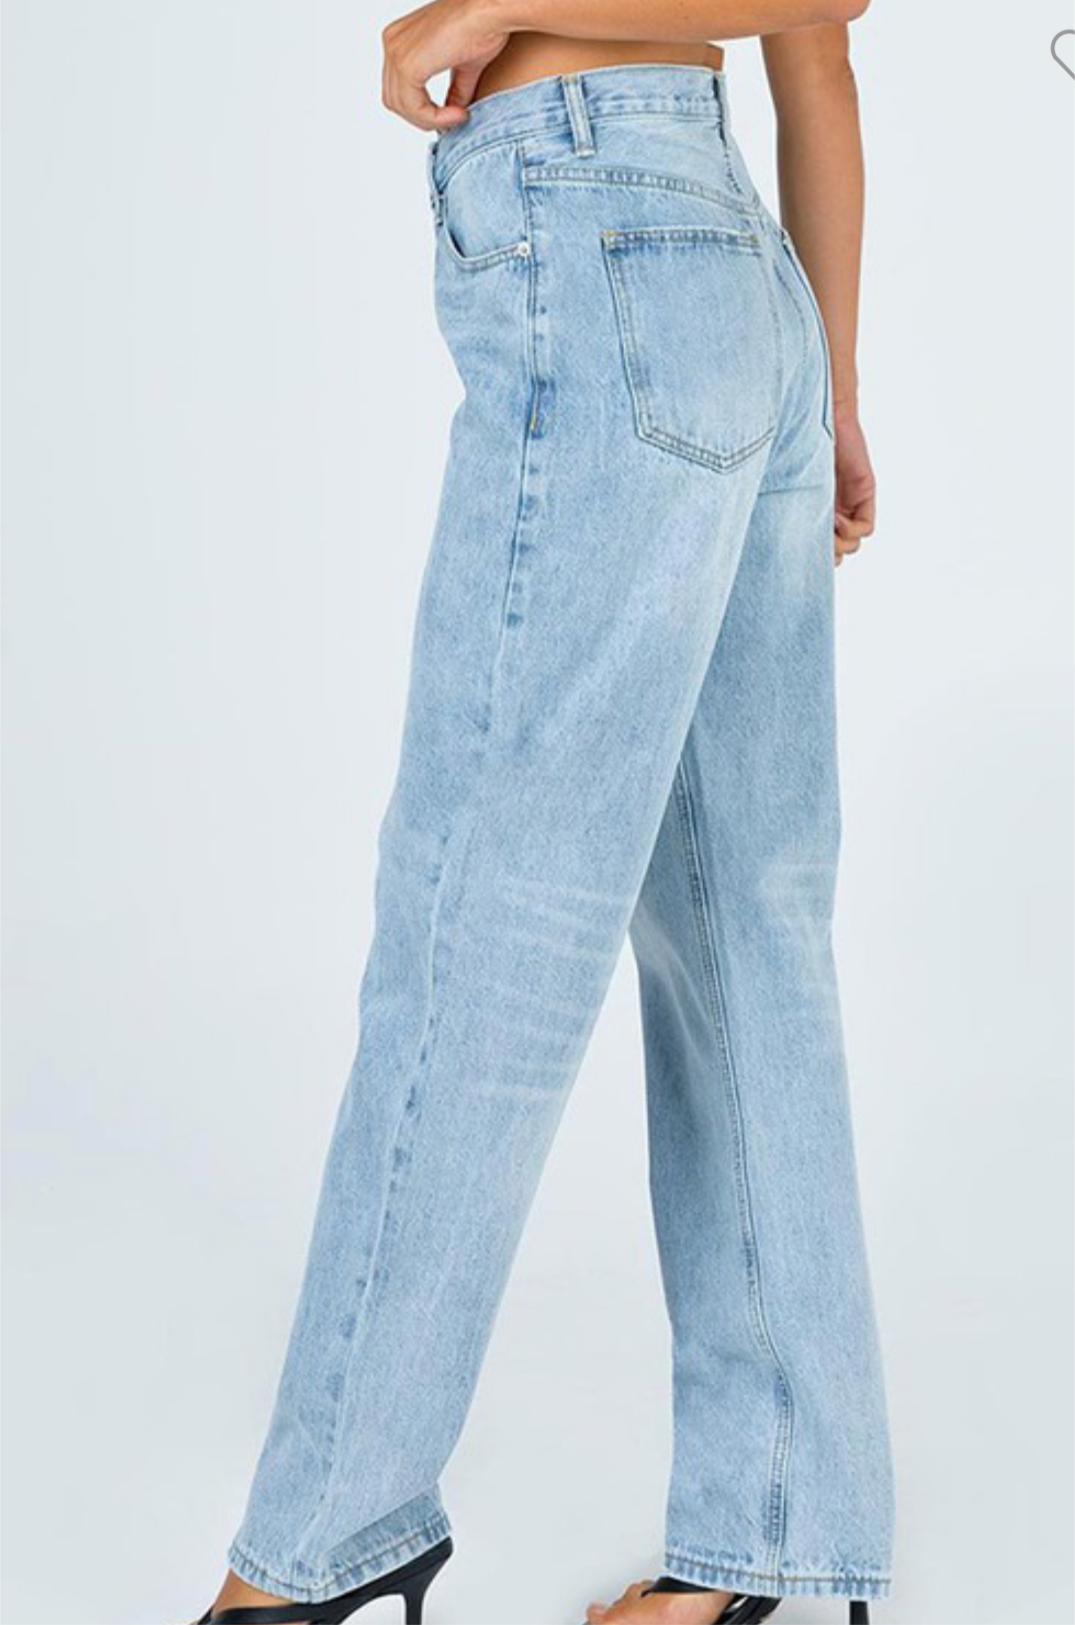 Asymmetric Hem Wrap Style Jeans, Medium Wash